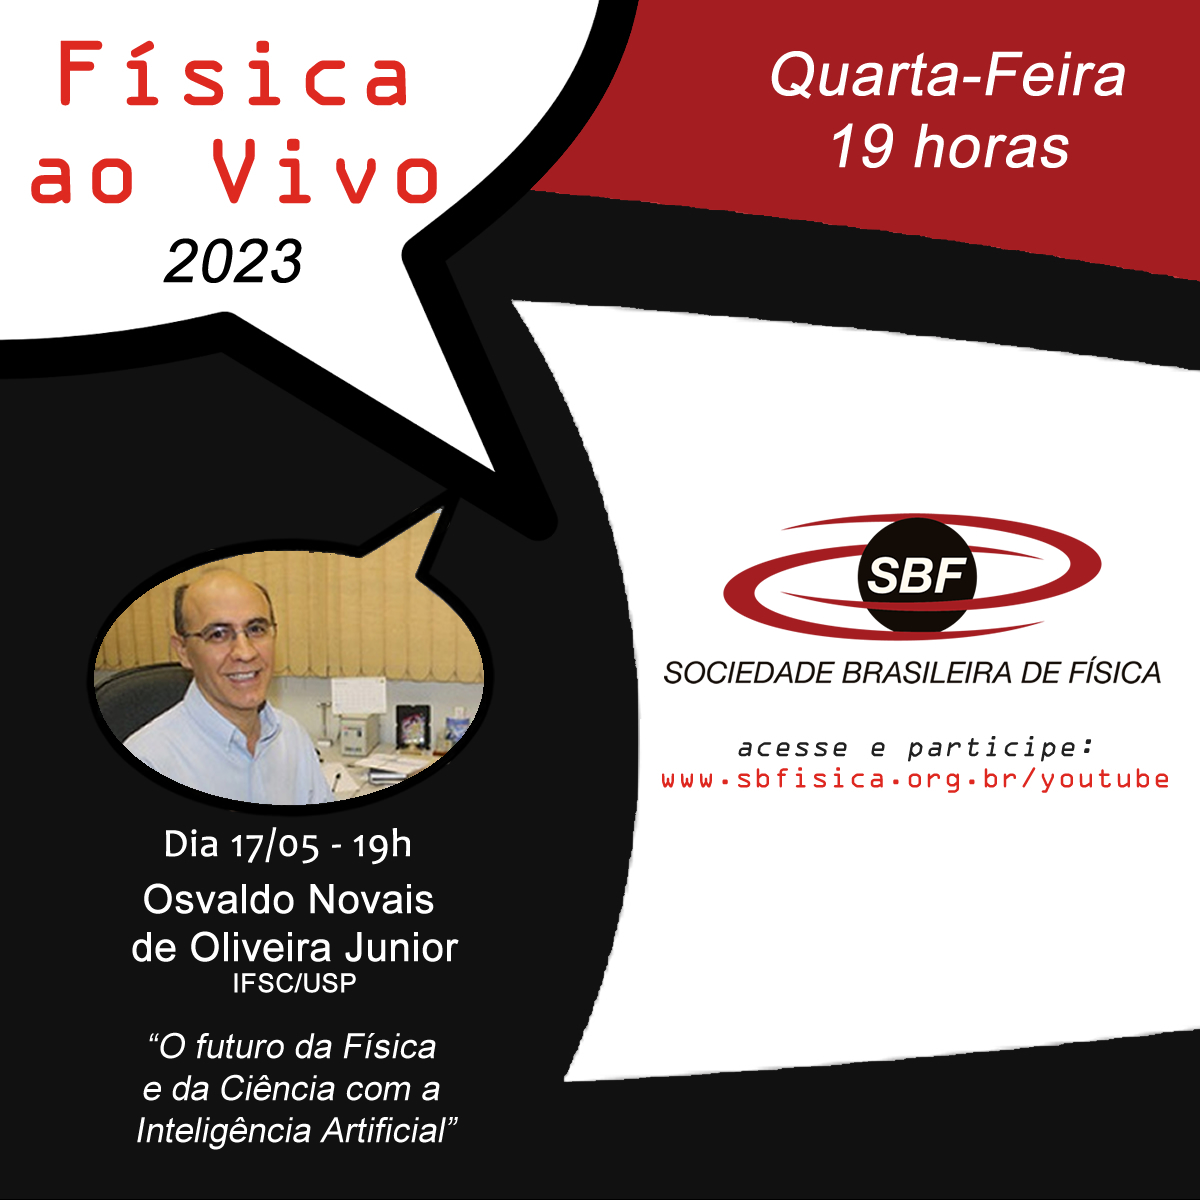 Física ao Vivo – Osvaldo Novais de Oliveira Junior – O futuro da Física e da Ciência com a Inteligência Artificial